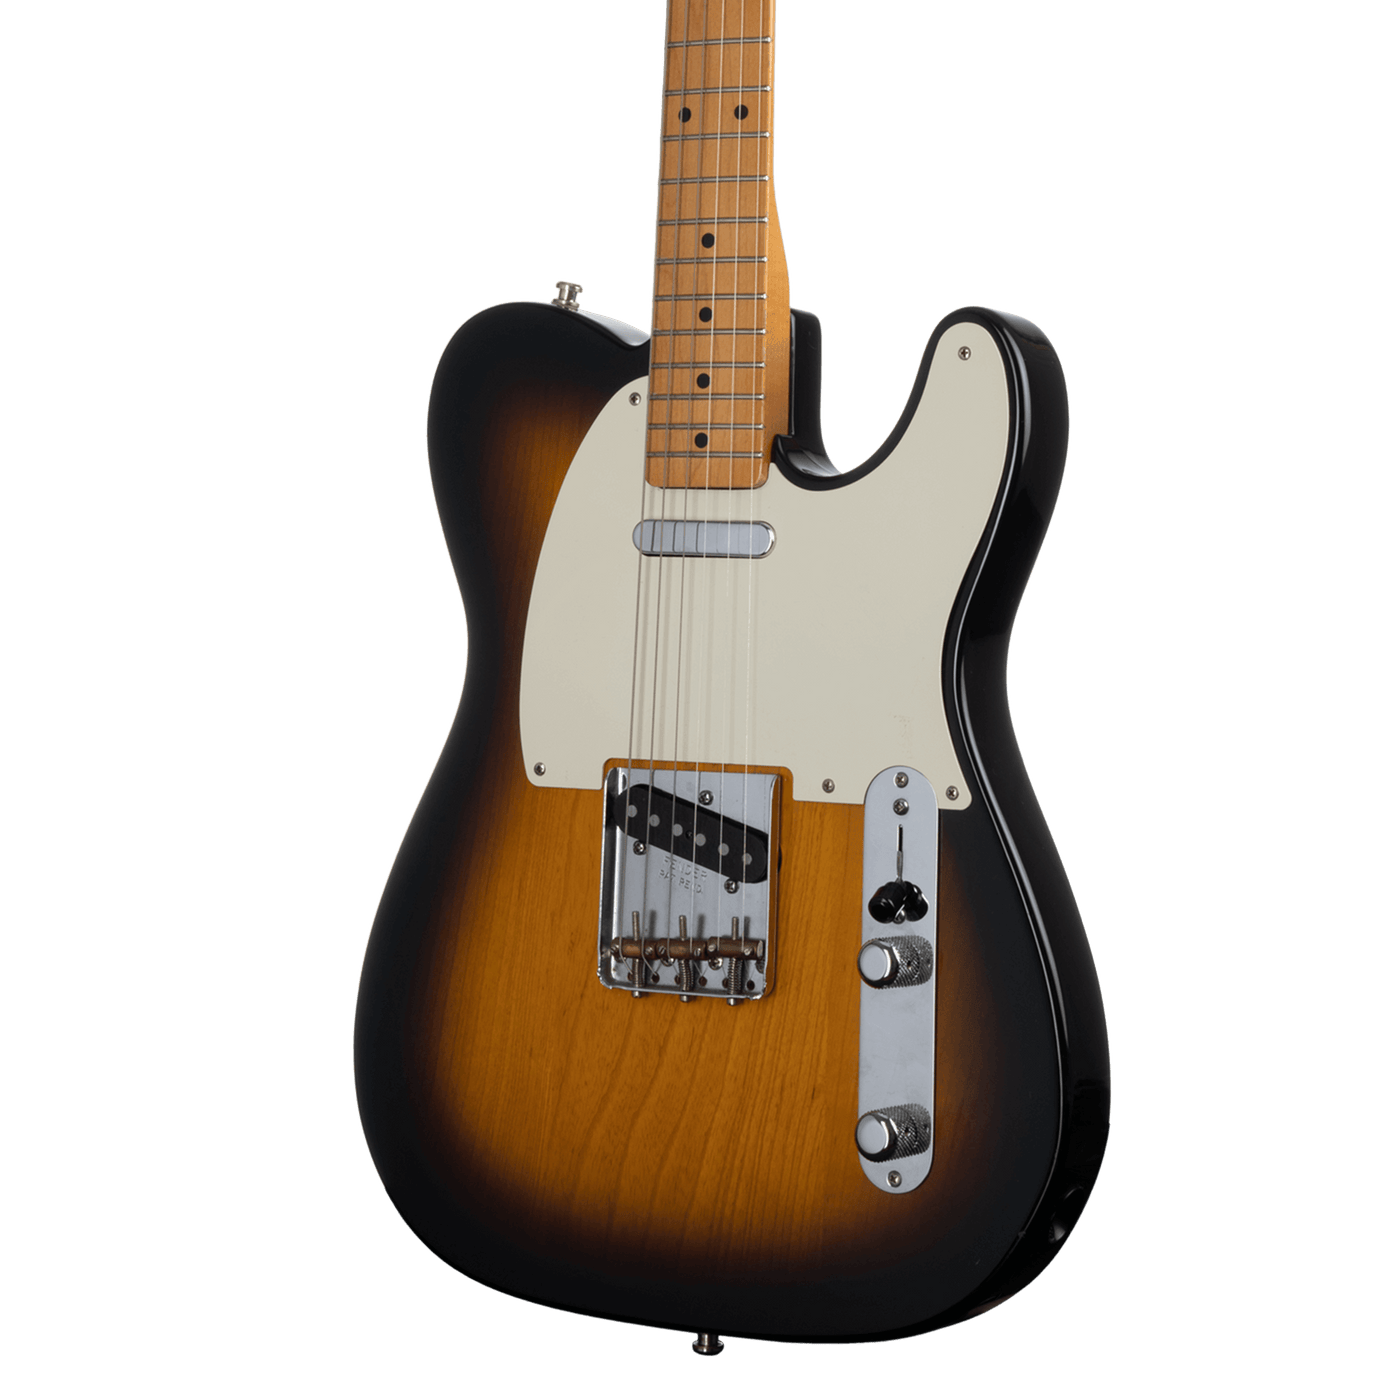 Fender Telecaster Classic Series '50s Sunburst MIM 2016